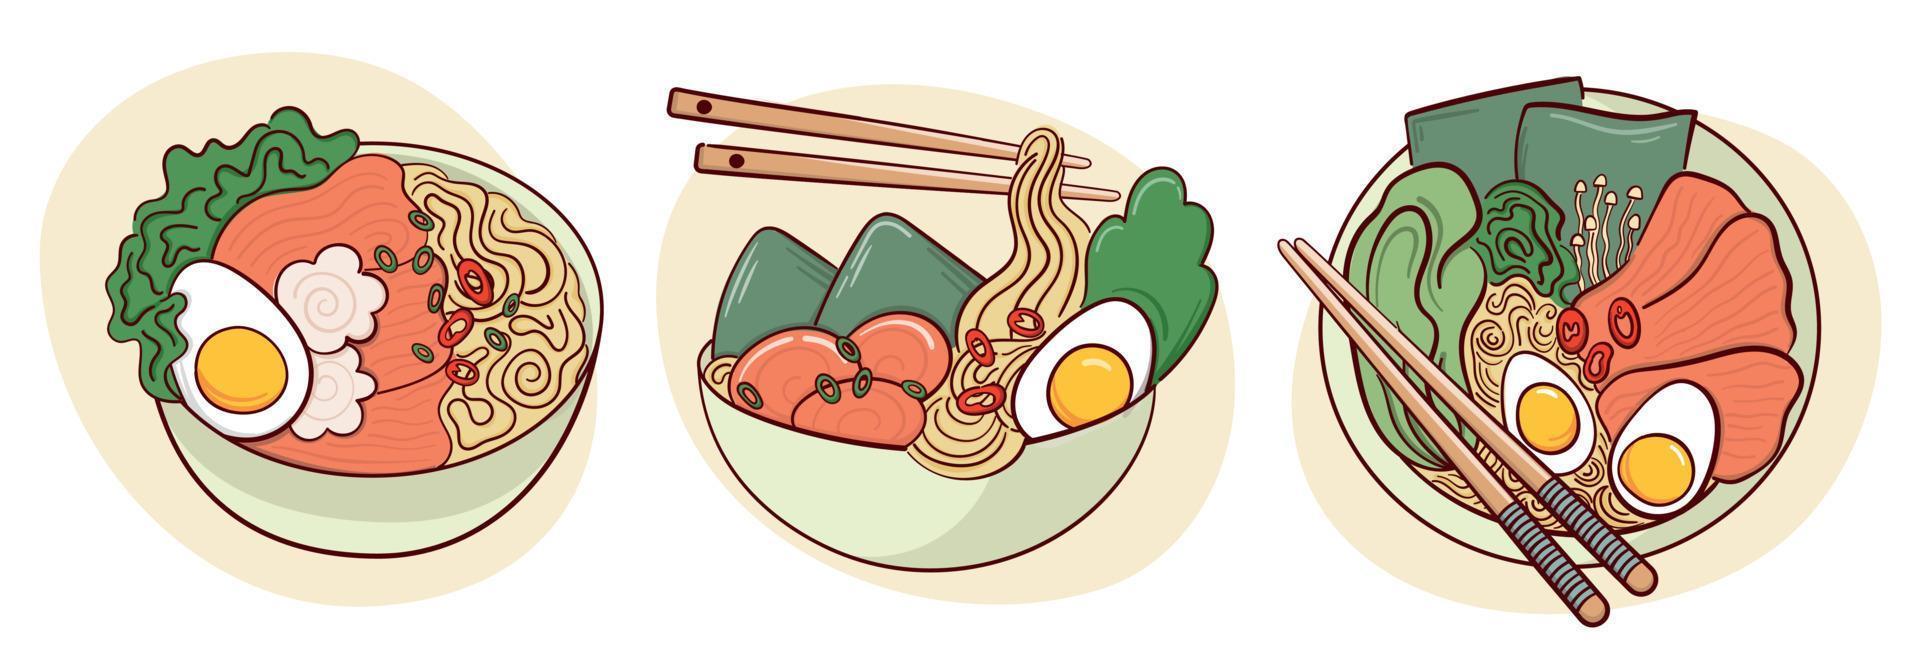 Ramen-Suppe in einer Schüssel-Vektor-Illustration zeichnen. japanisches asiatisches traditionelles essen, kochen, menükonzept. Doodle-Cartoon-Stil. vektor